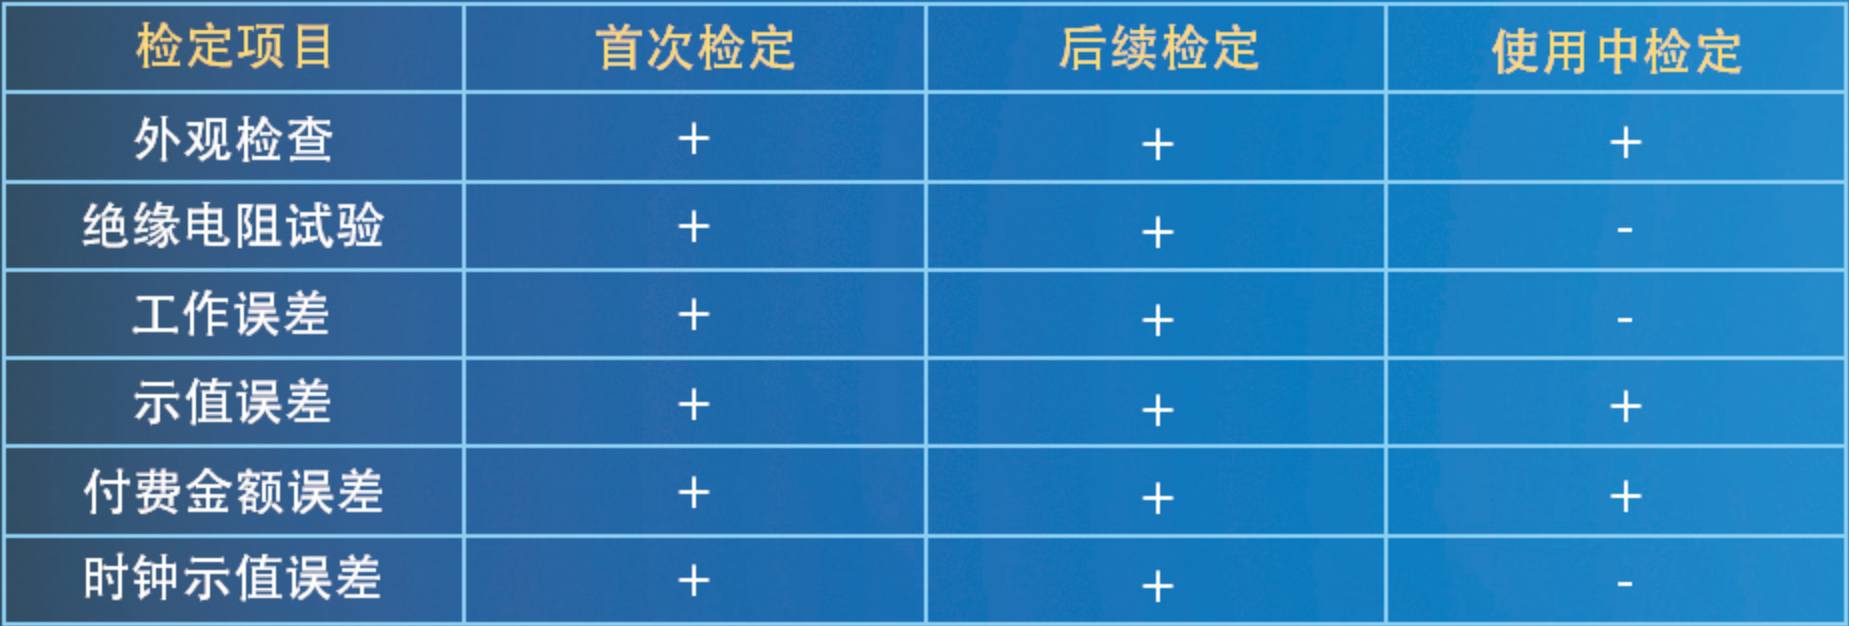 新普京澳门娱乐场网站-充电桩计量与检测方案(图2)